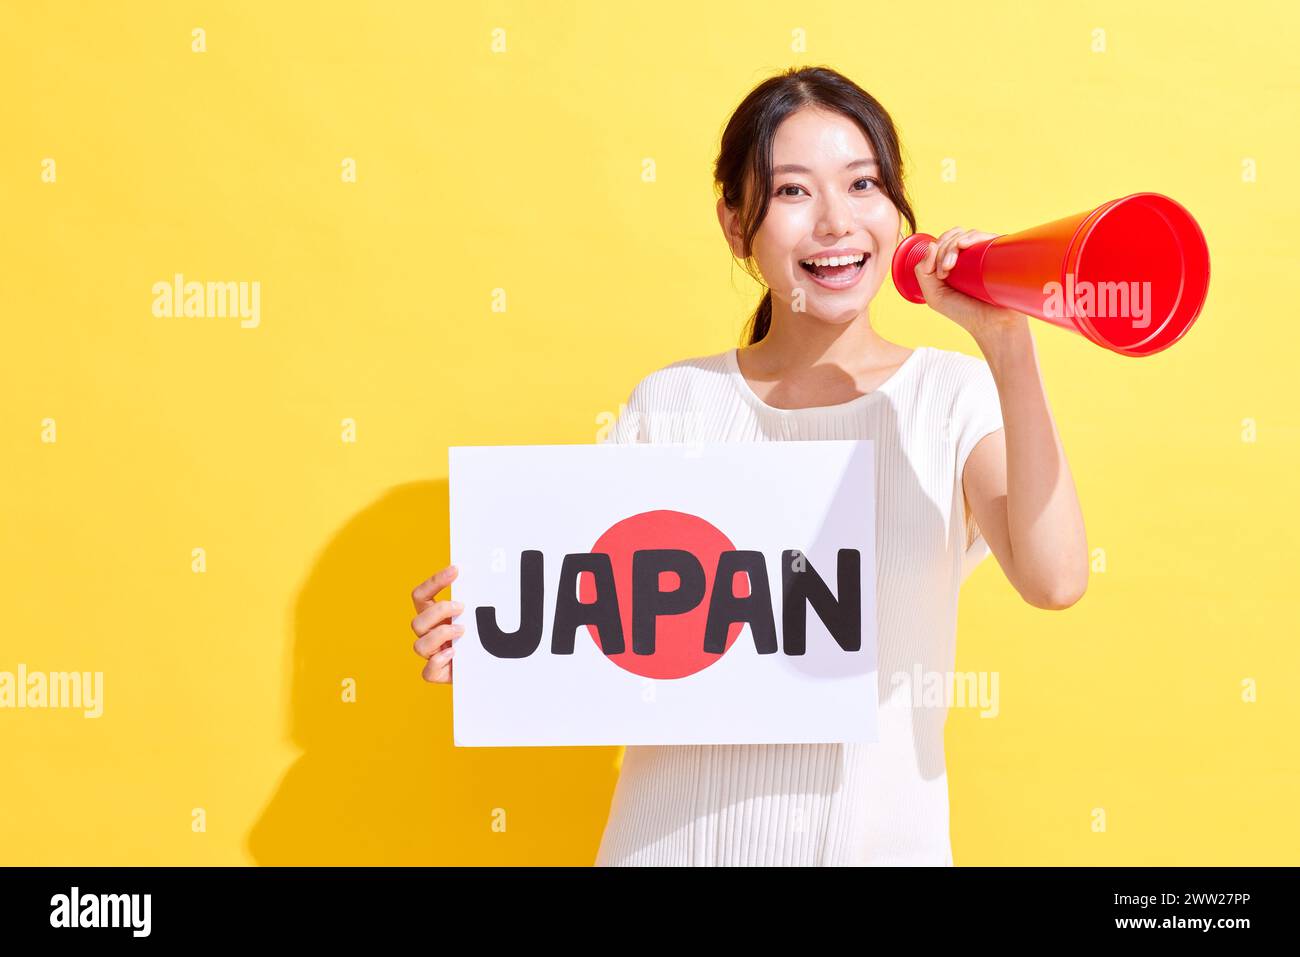 Femme japonaise tenant une pancarte avec le mot Japon et un mégaphone Banque D'Images